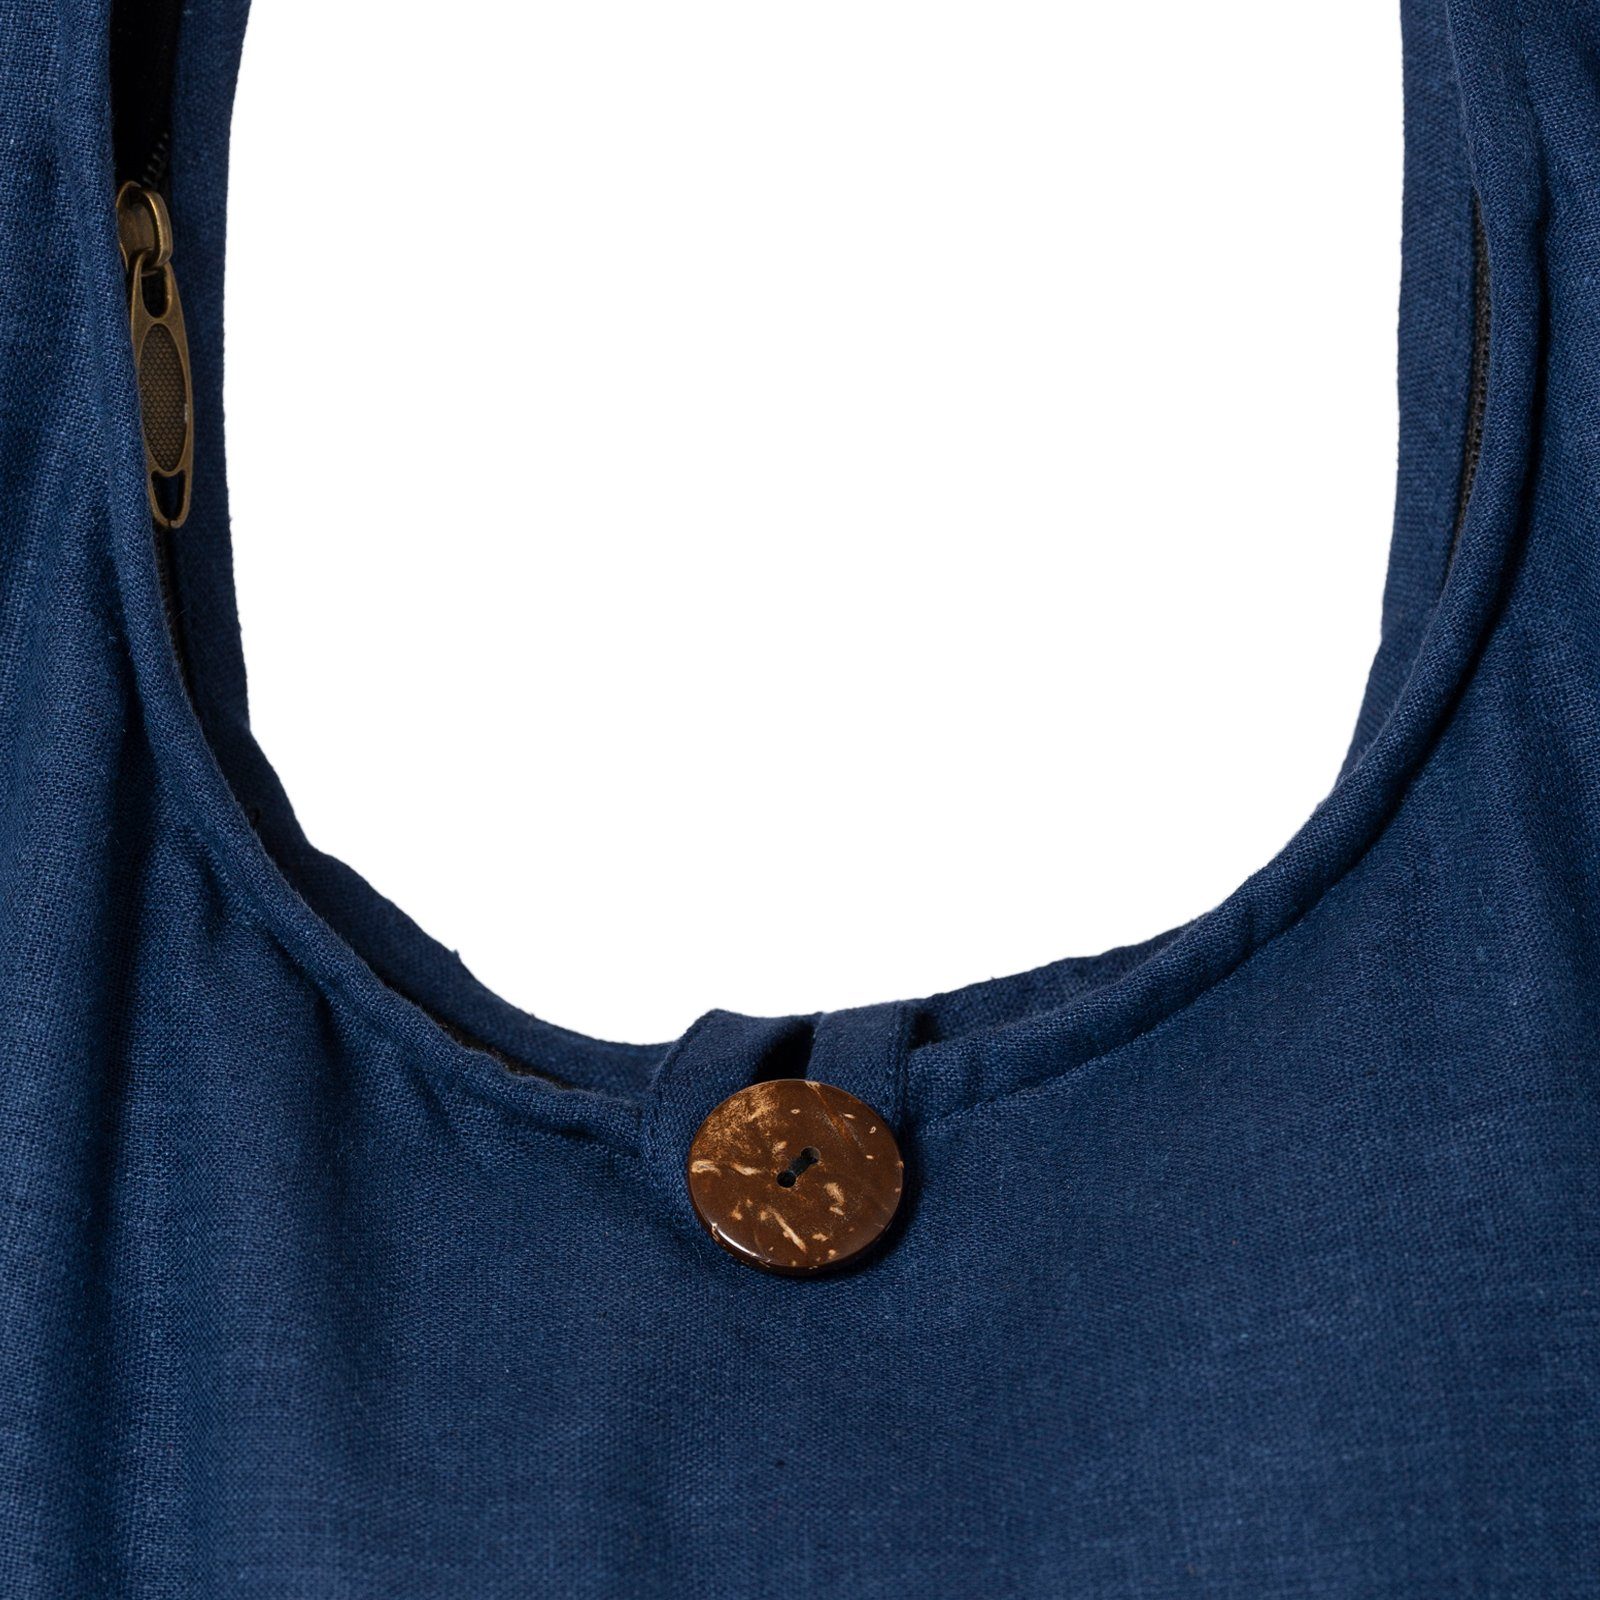 PANASIAM Yogatasche Schulterbeutel einfarbig Schultertasche oder 2 Hanf aus Größen, Umhängetasche Strandtasche als Handtasche auch Blau Wickeltasche in